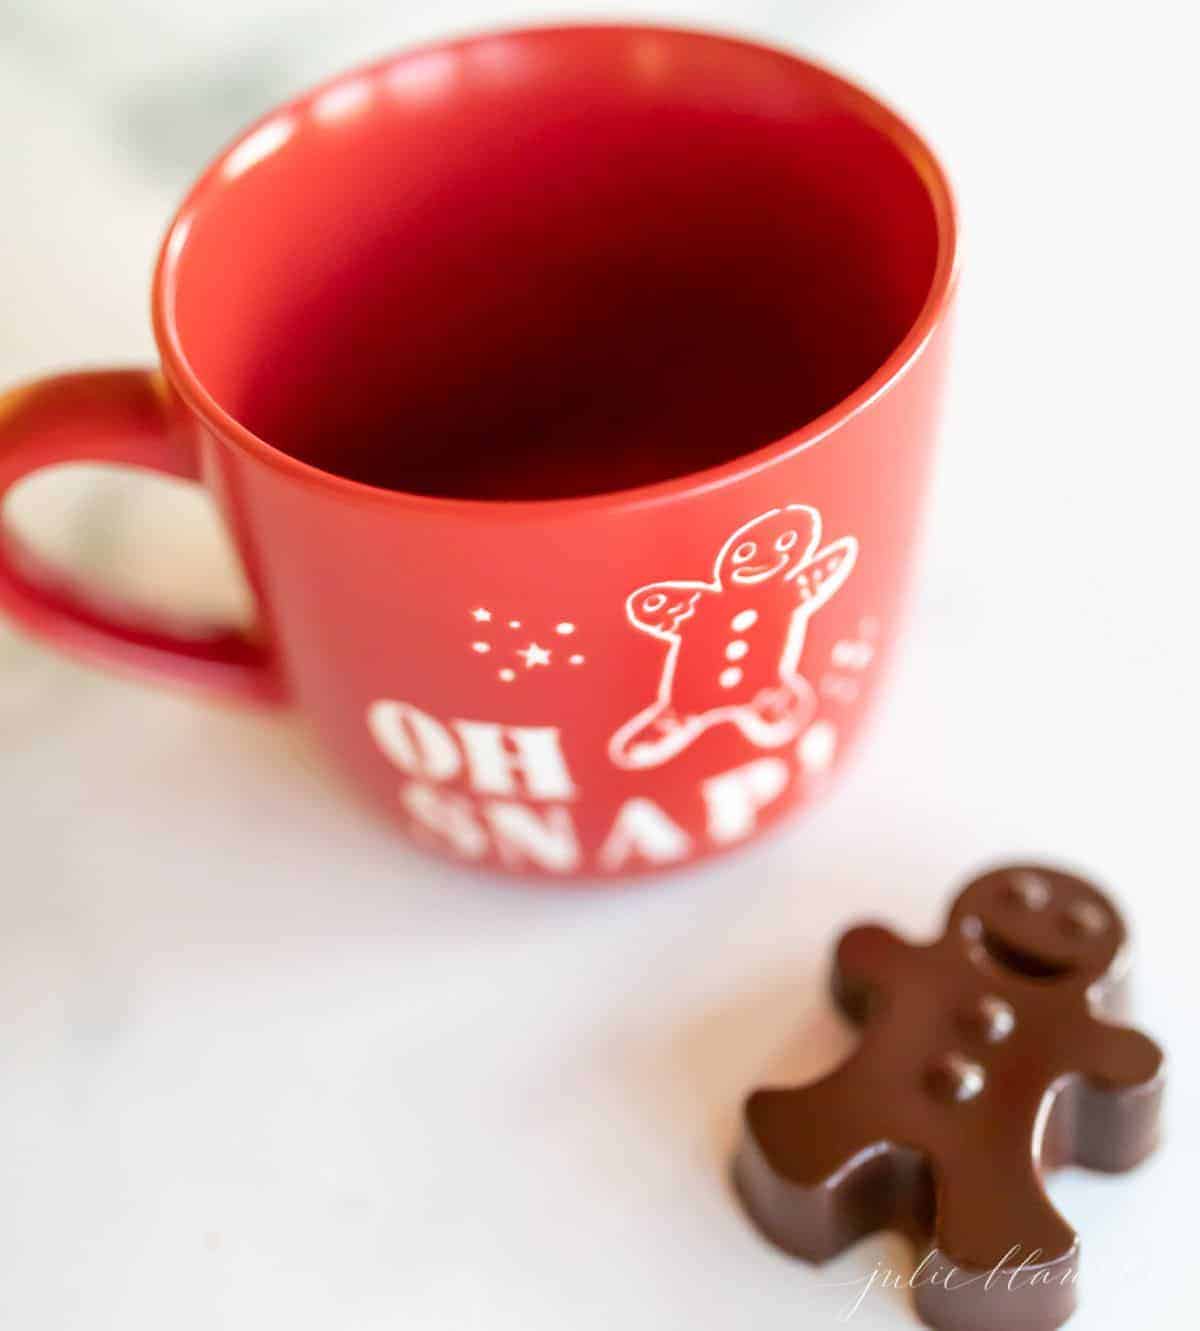 红杯子的热巧克力，用深色的热巧克力炸弹形状像姜饼人一样。GydF4y2Ba